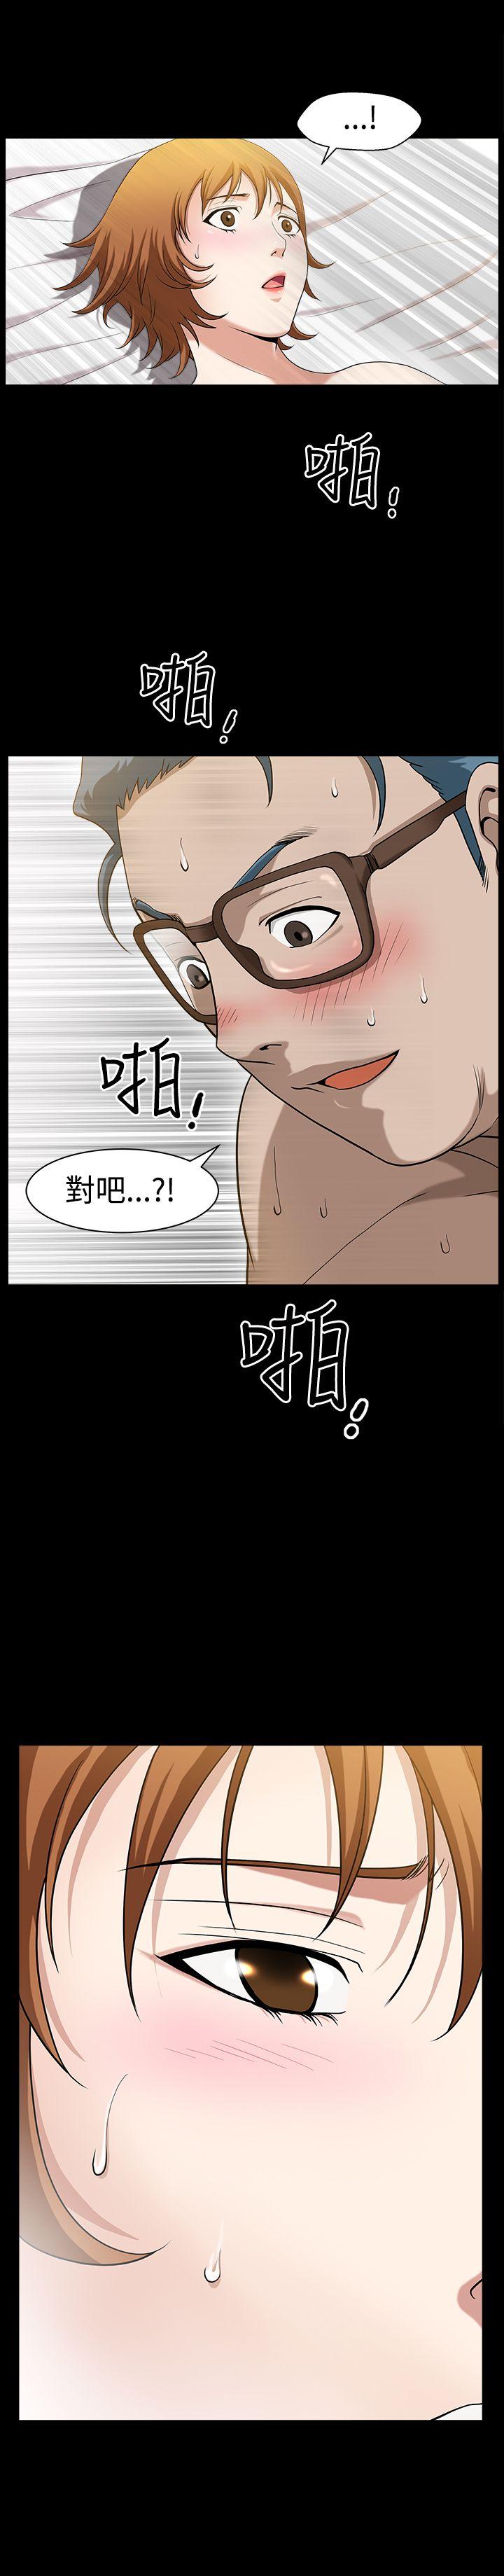 韩国污漫画 人妻性解放3:粗糙的手 第28话 13